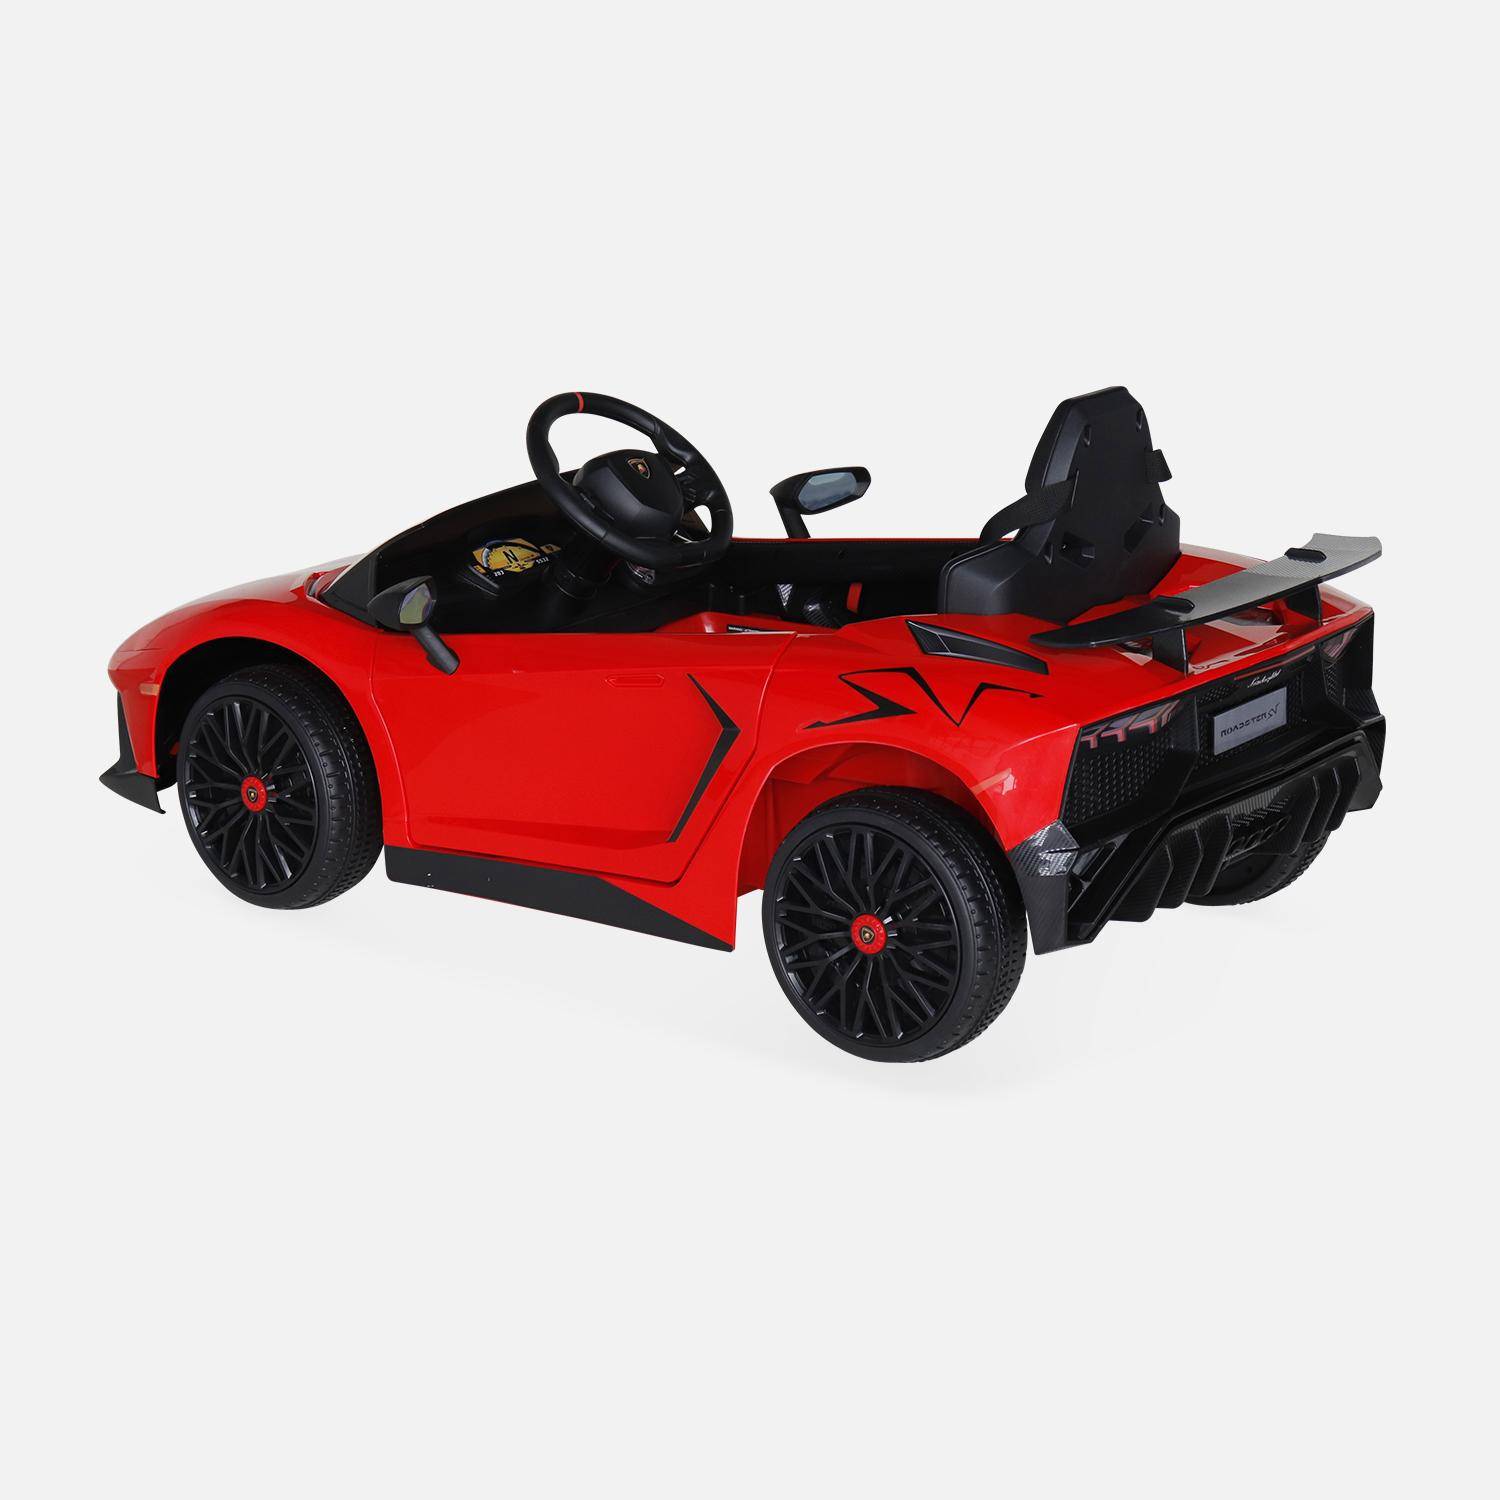 12V Lamborghini elektrische kinderauto, rood, 1 zitplaats, met autoradio, afstandsbediening, MP3, USB-poort en functionele koplampen Photo3